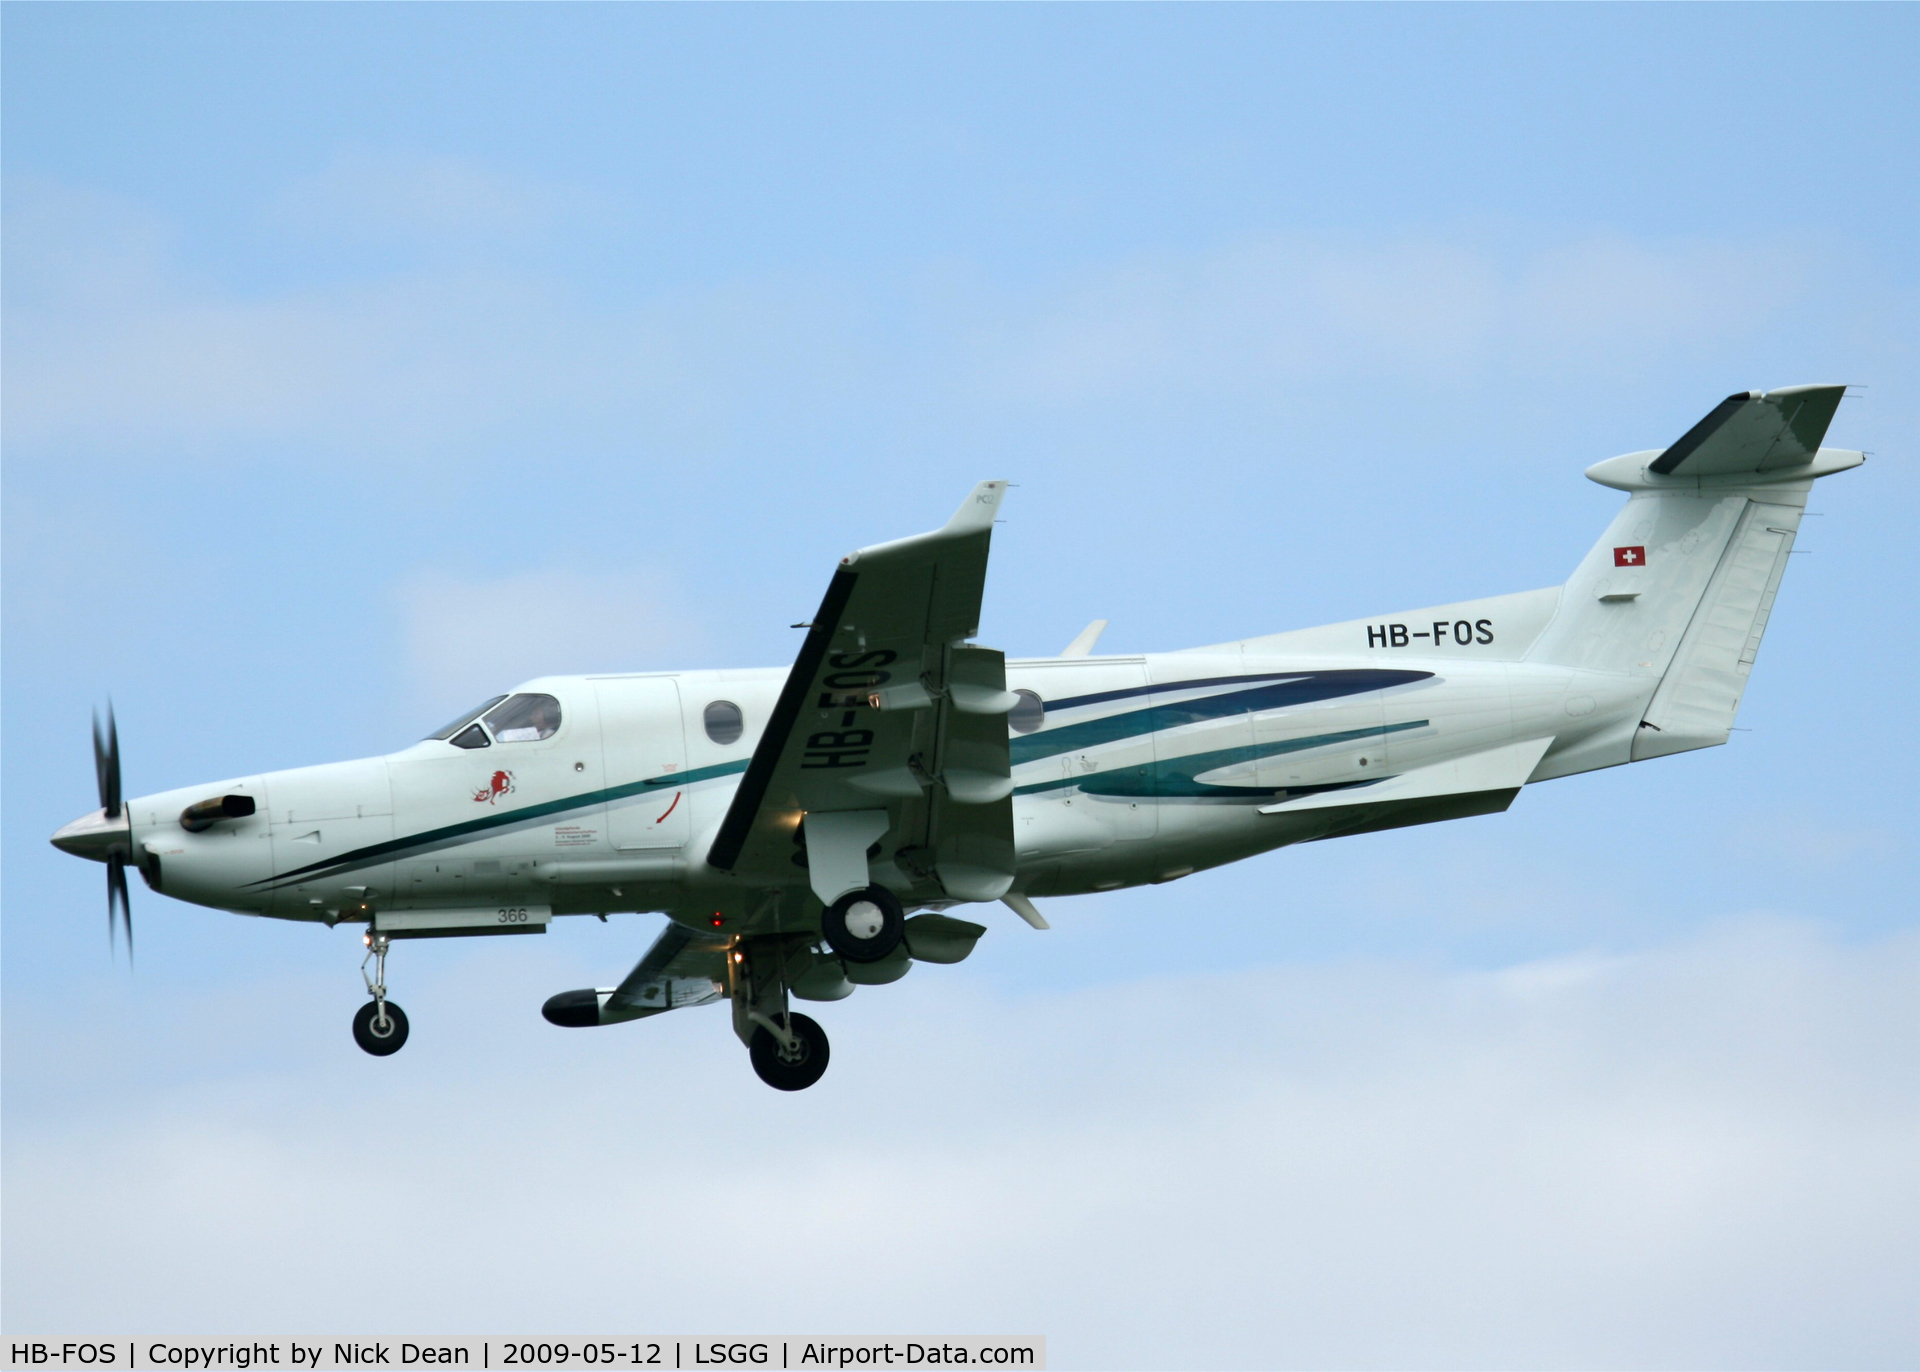 HB-FOS, 2000 Pilatus PC-12/45 C/N 366, LSGG